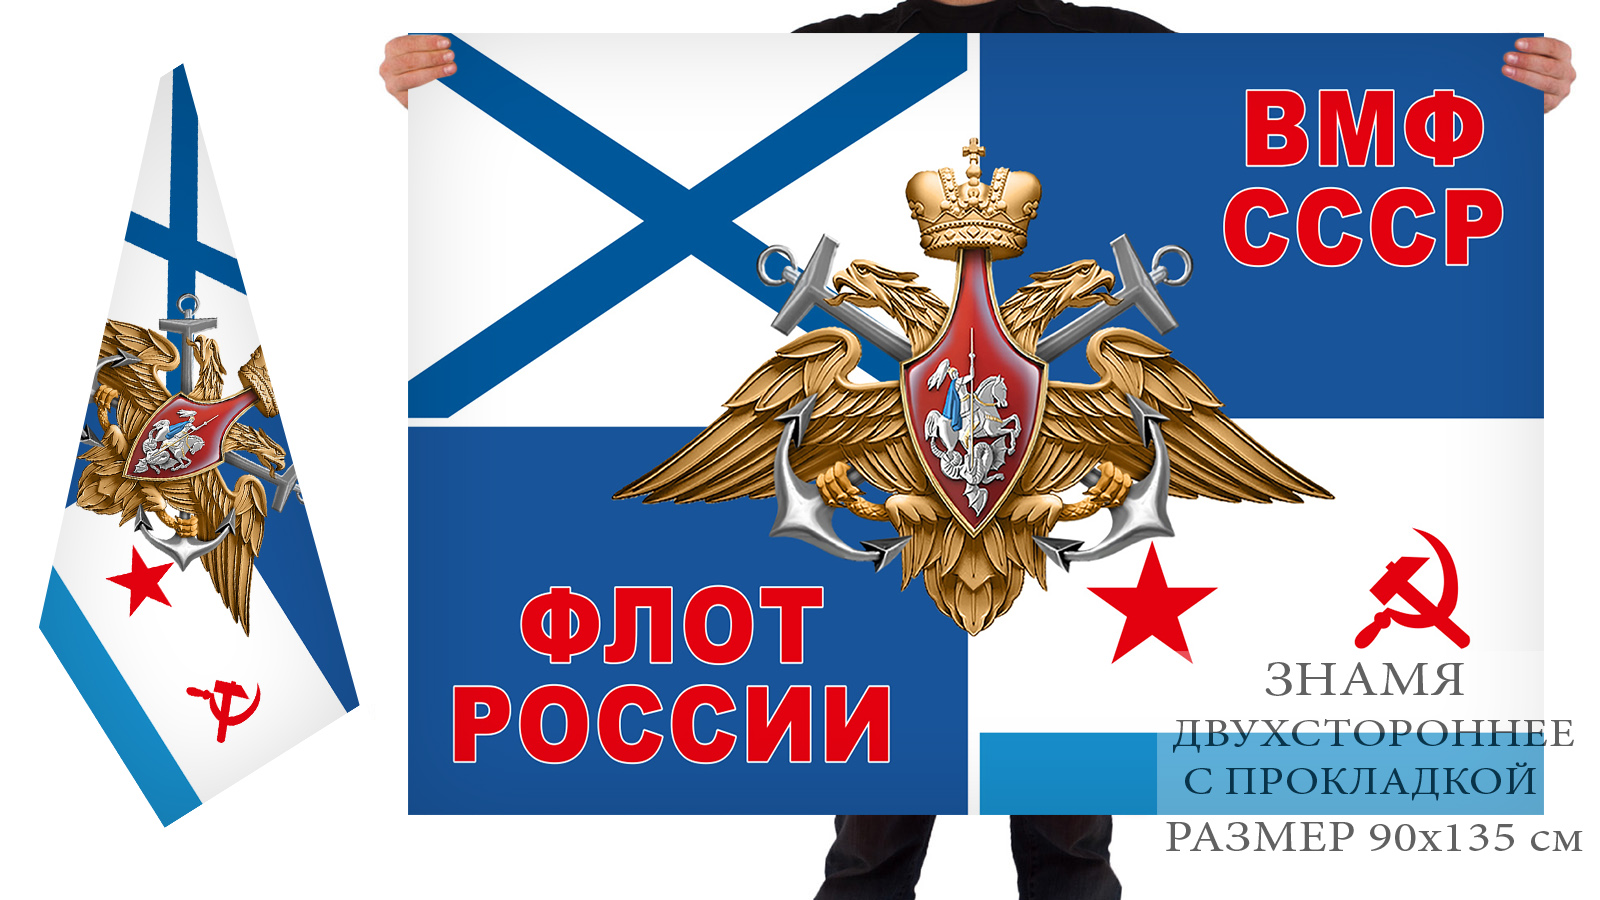 Двусторонний флаг ВМФ СССР и флота России